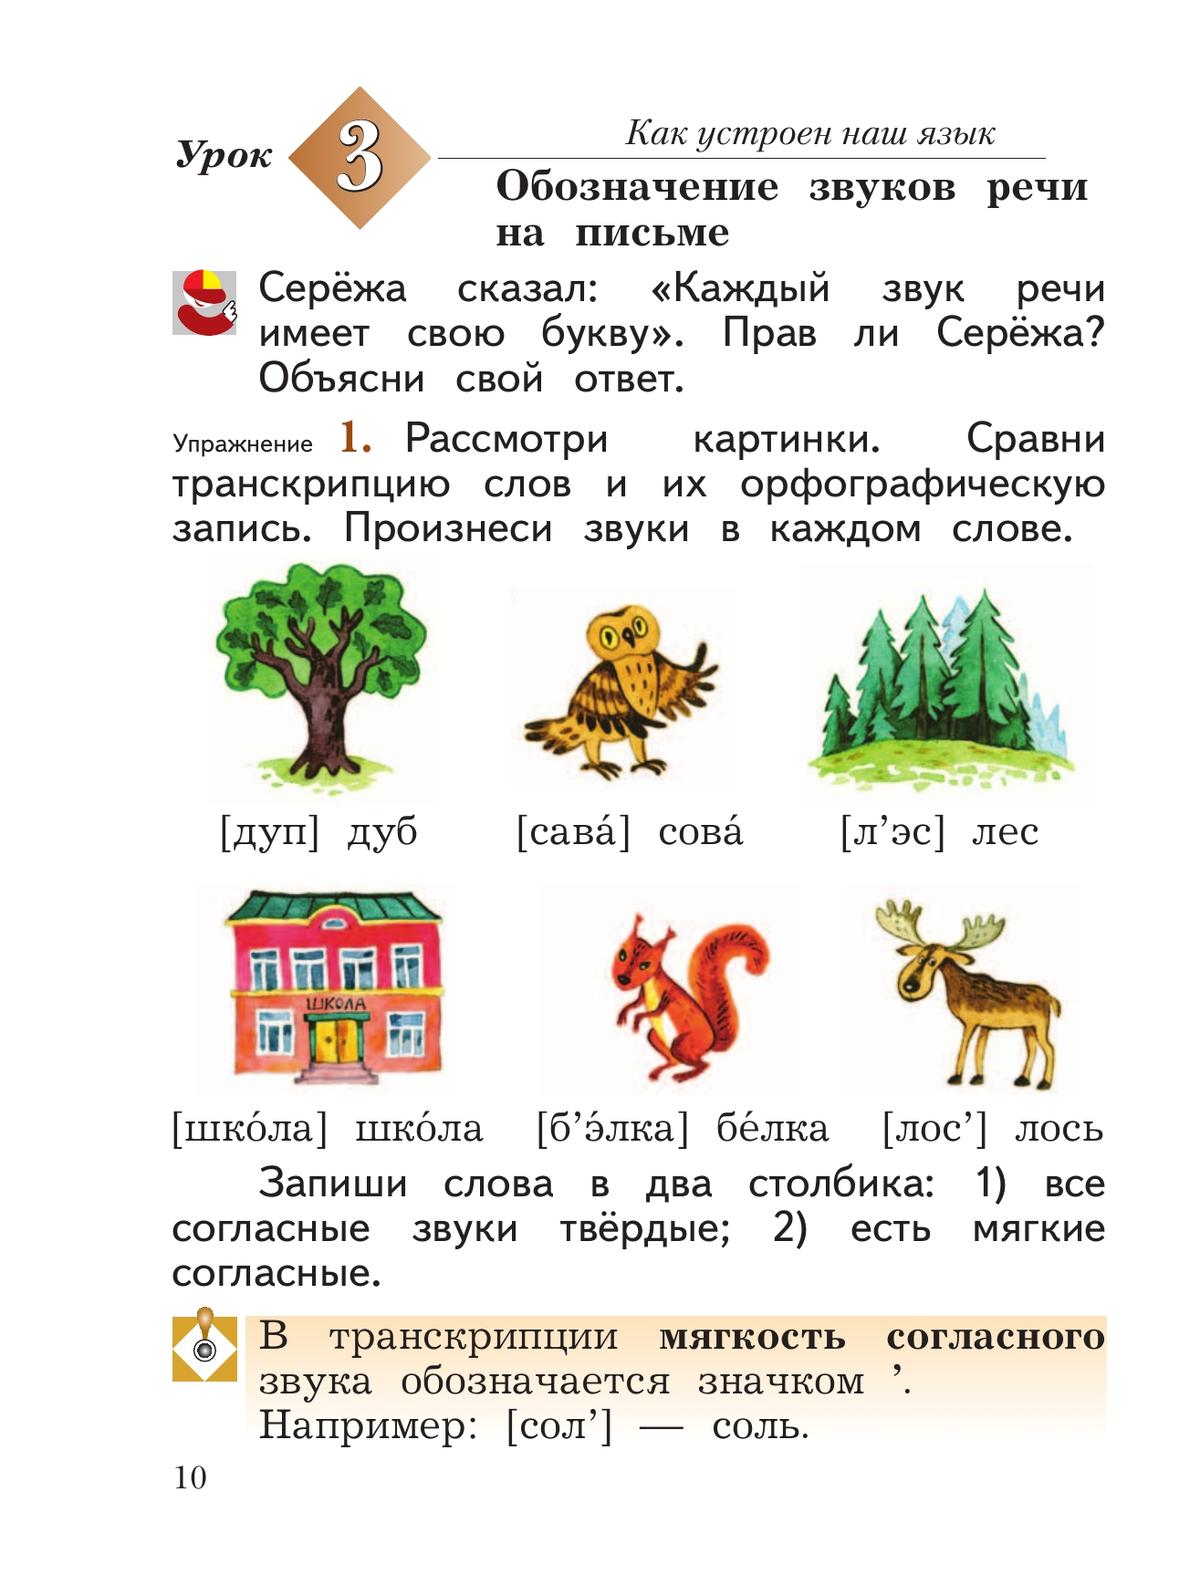 Русский язык. 2 класс. Учебное пособие. В 2 ч. Часть 1 8